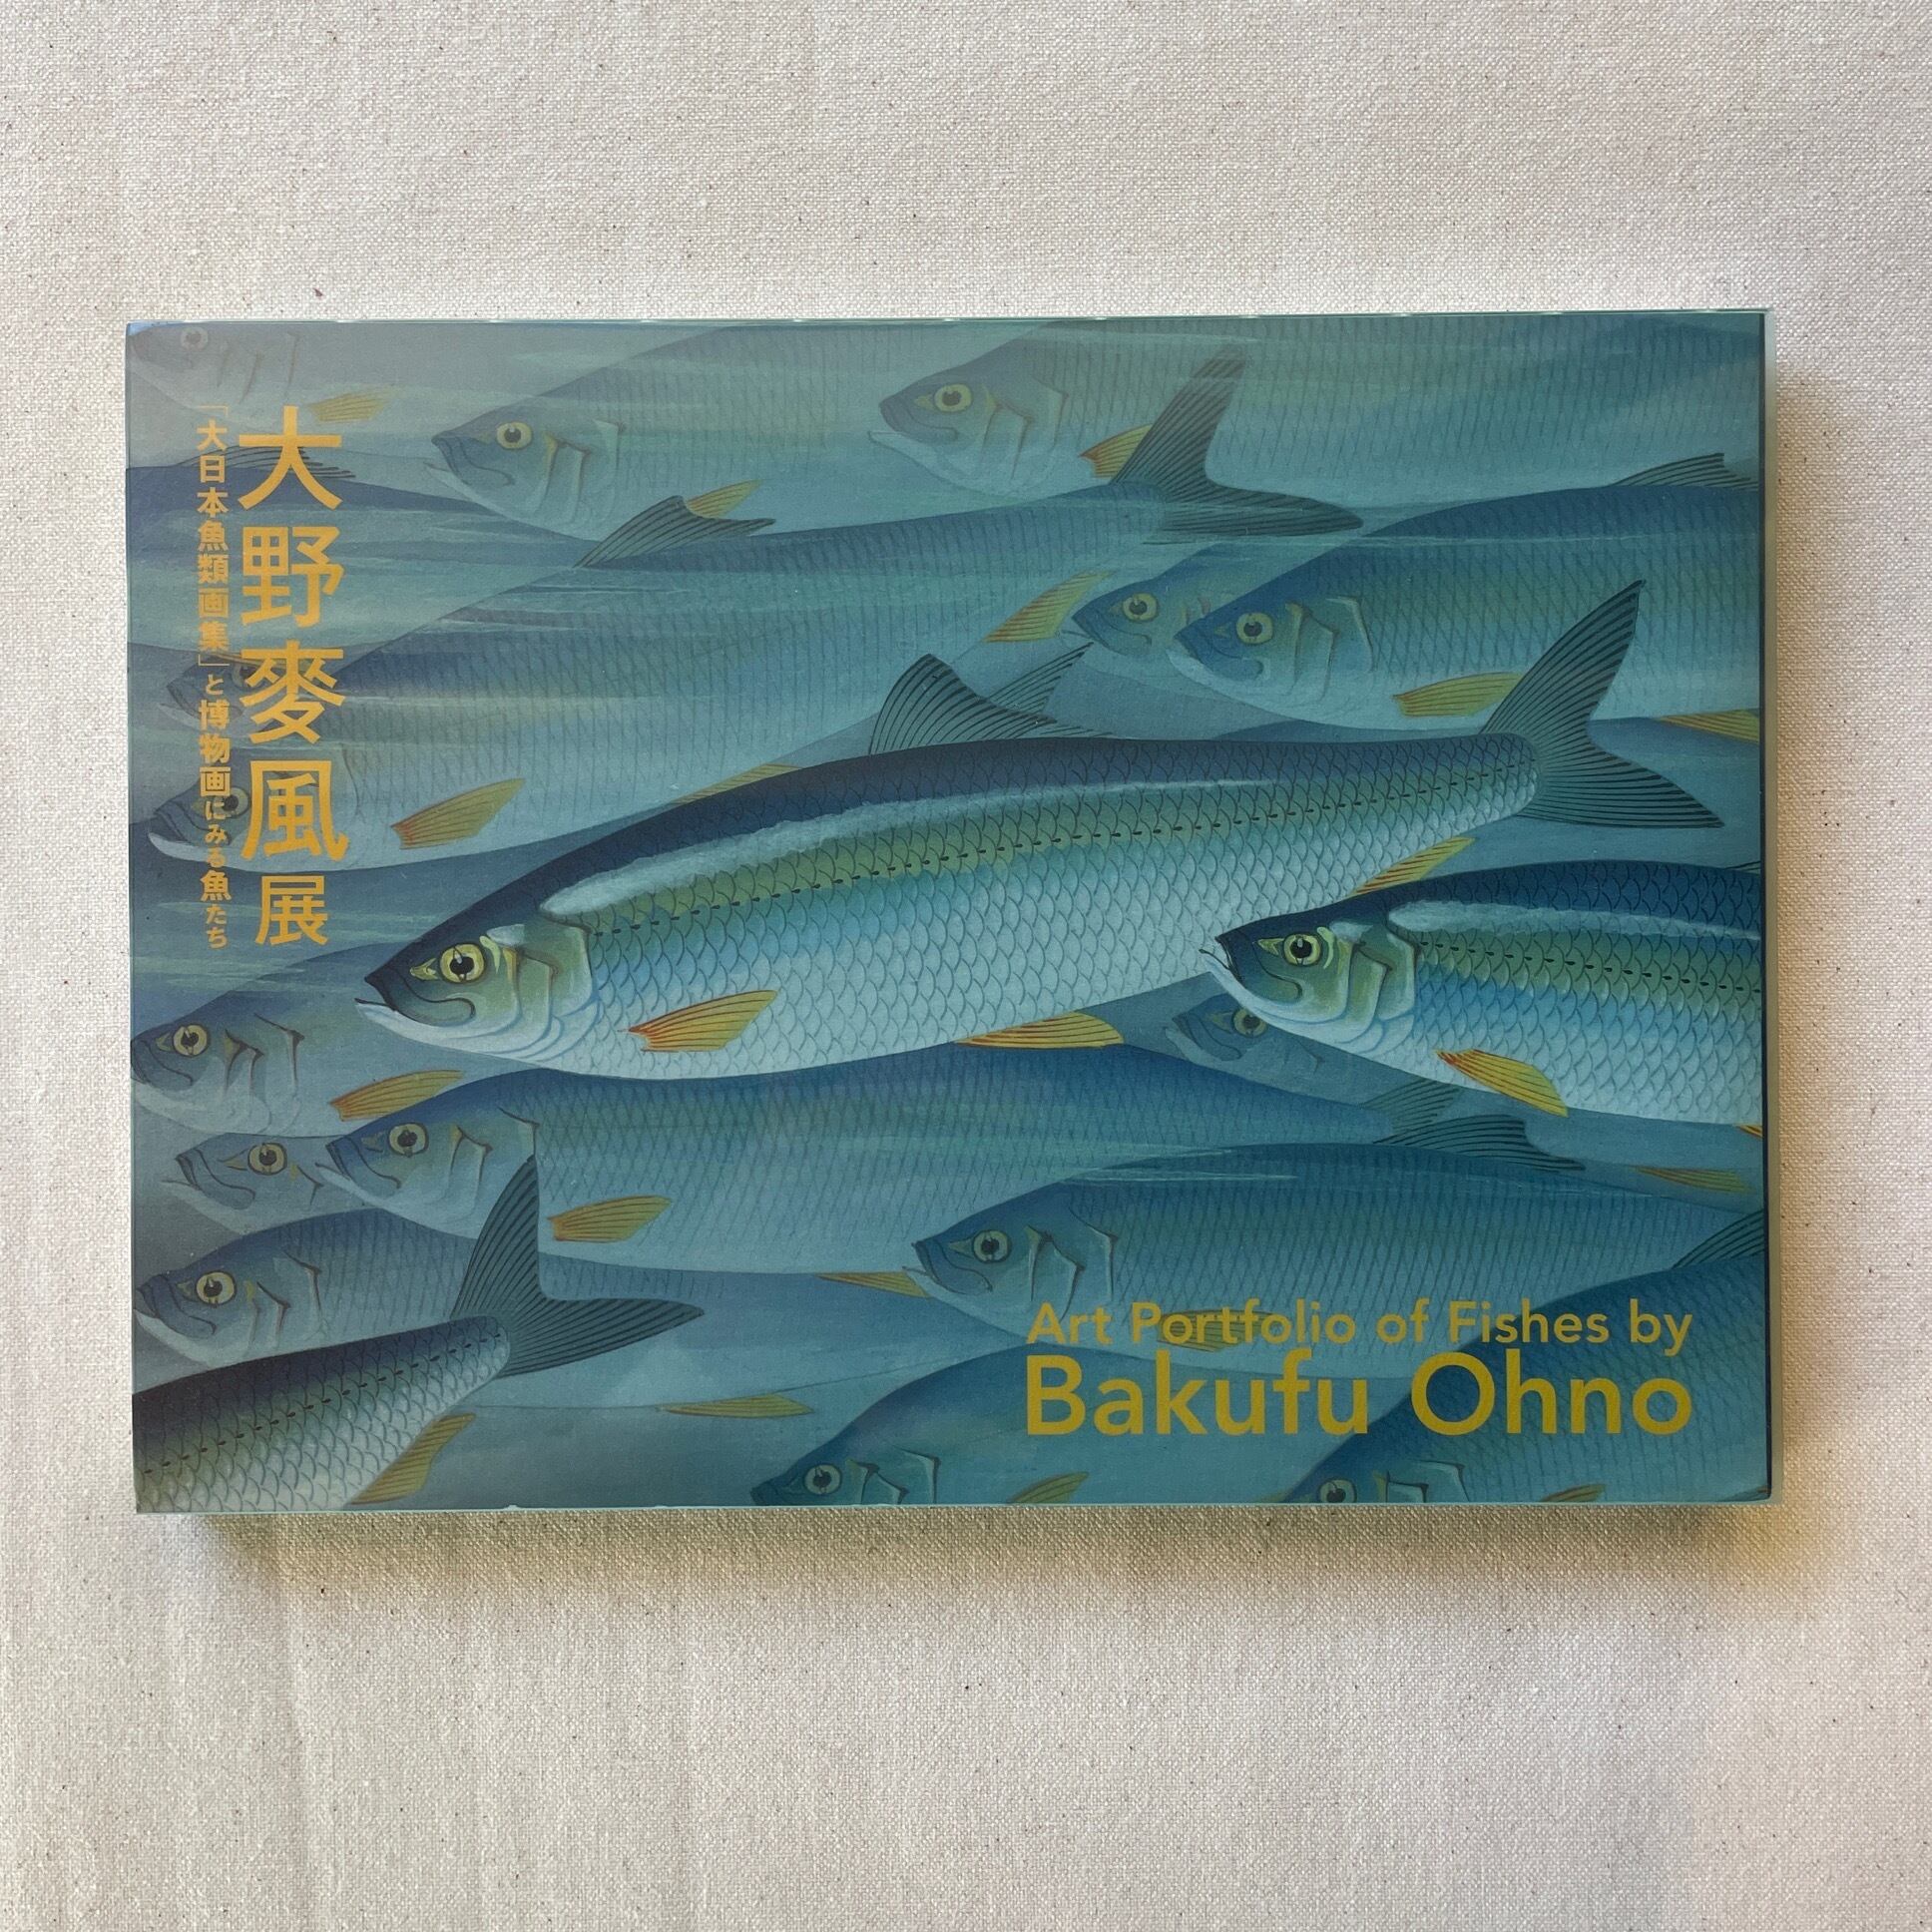 大野麥風展 「大日本魚類画集」と博物画にみる魚たち